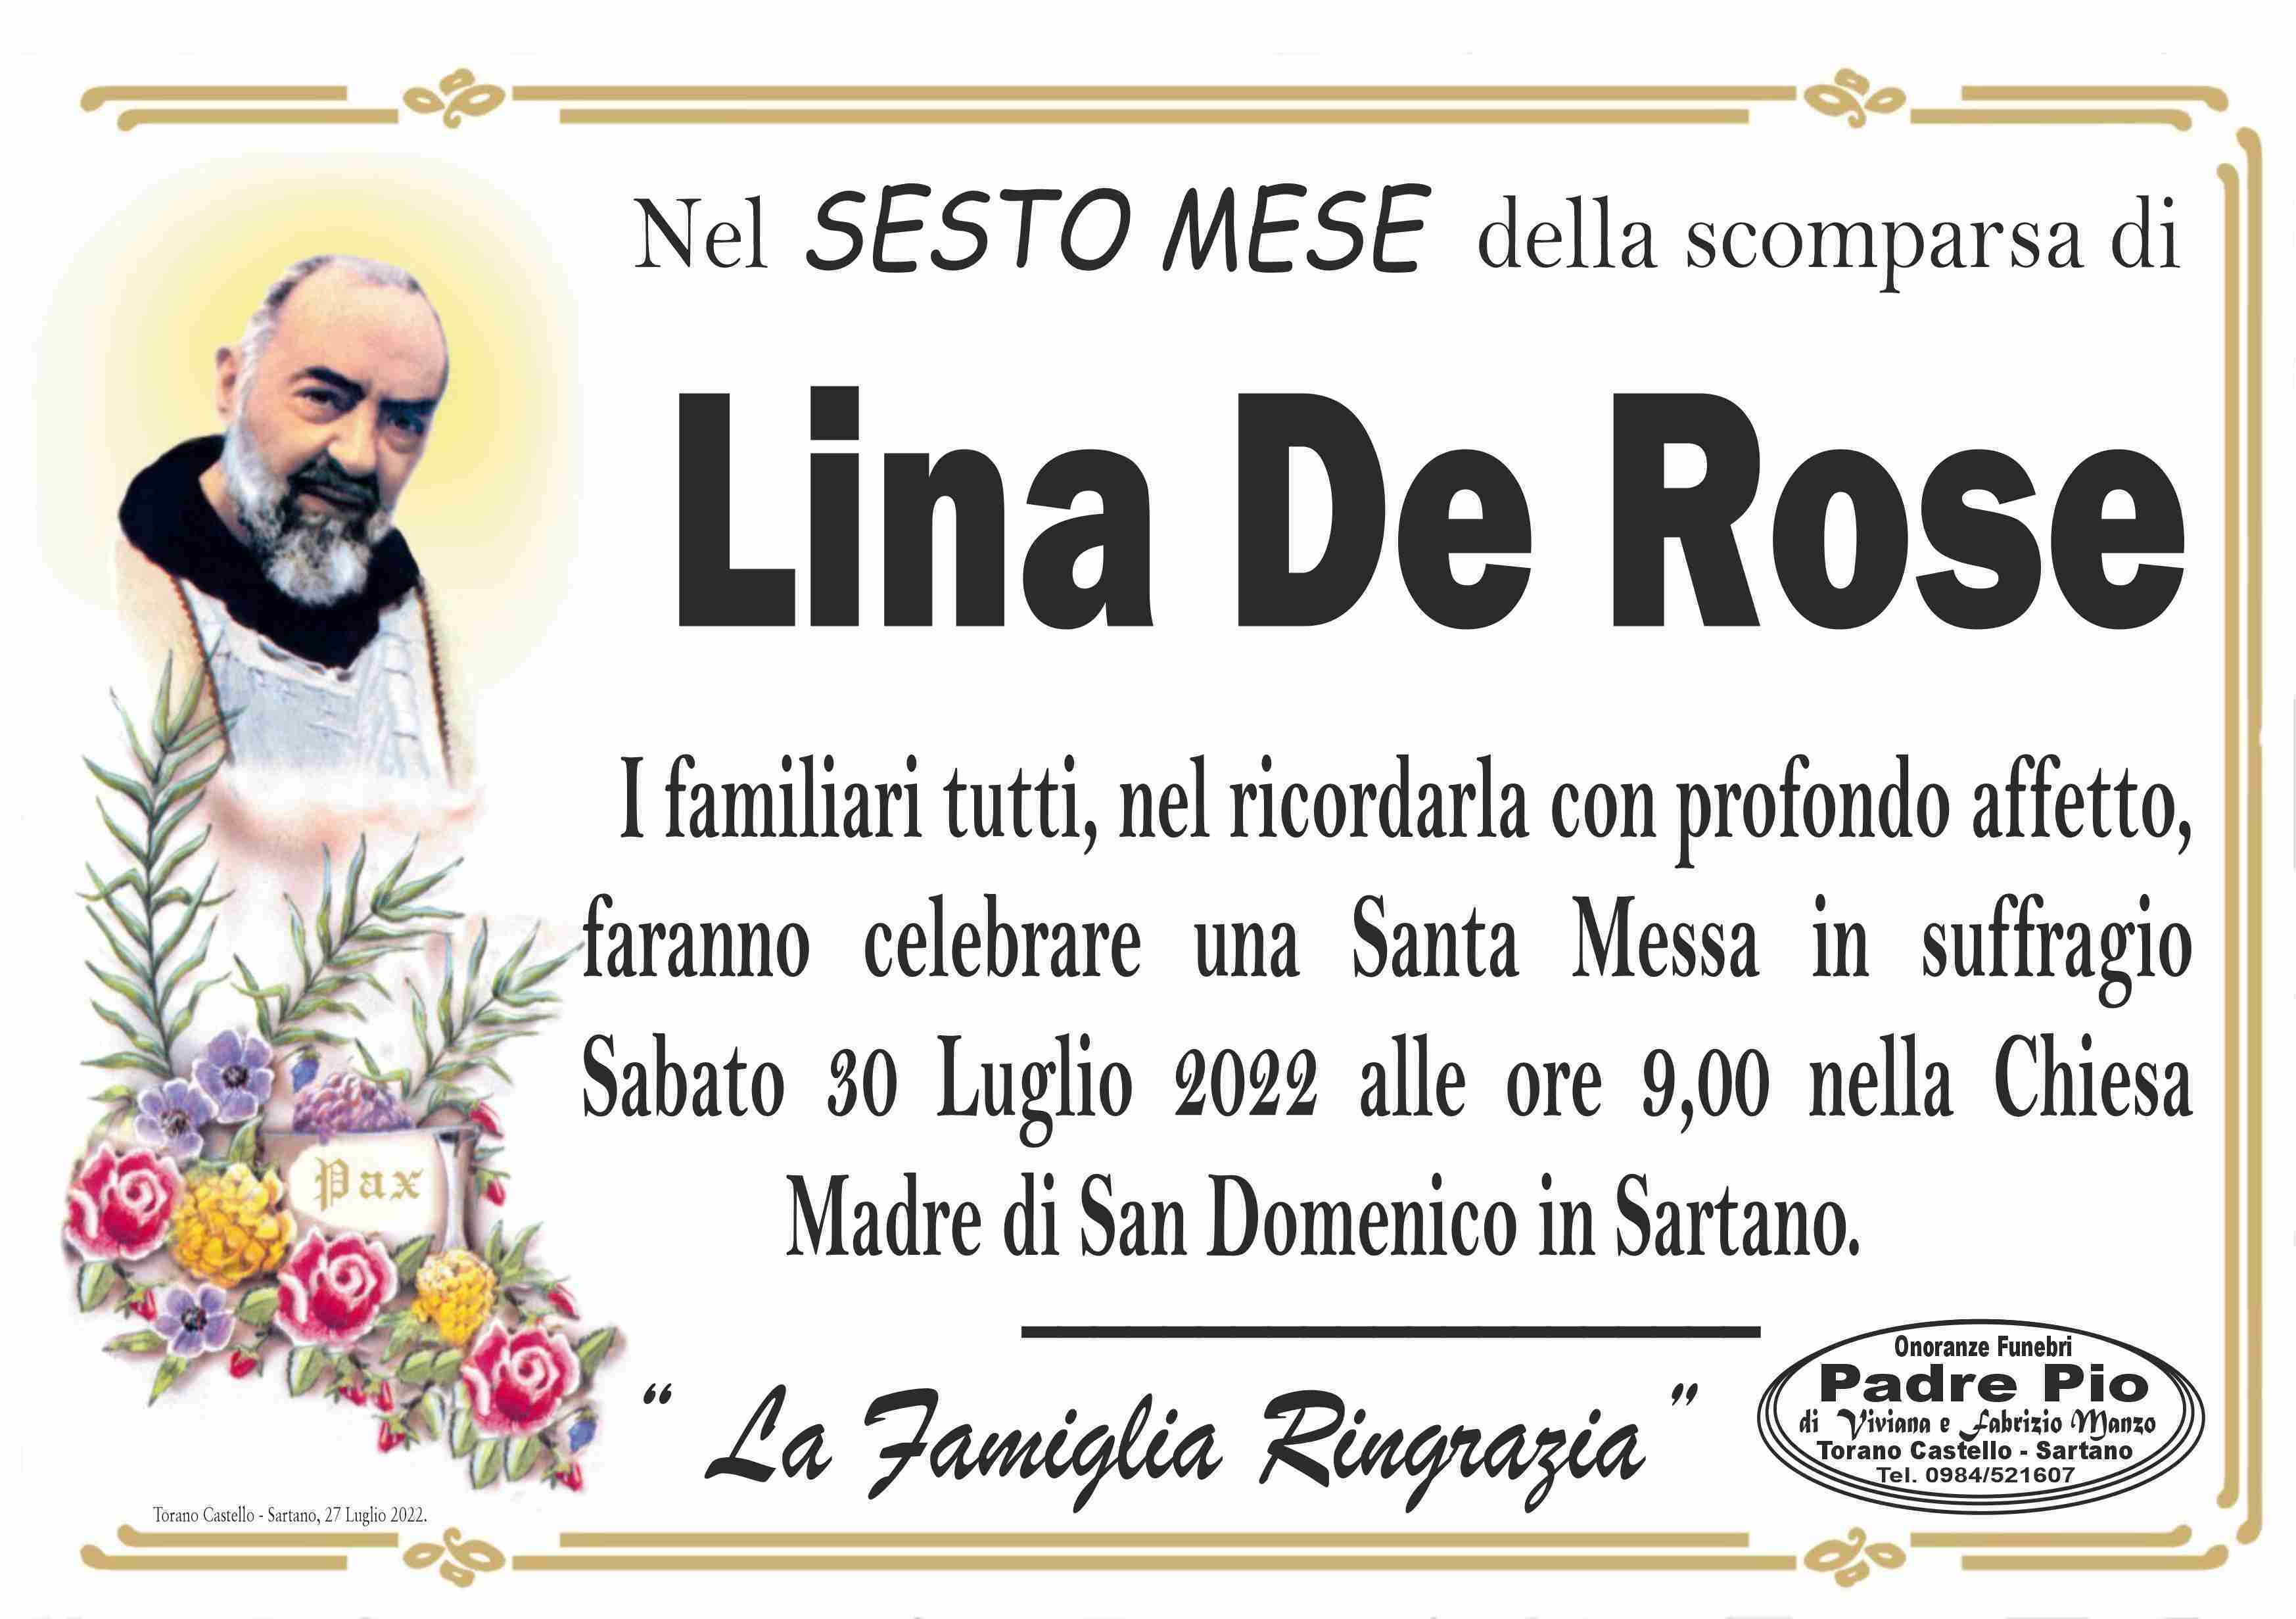 Lina De Rose